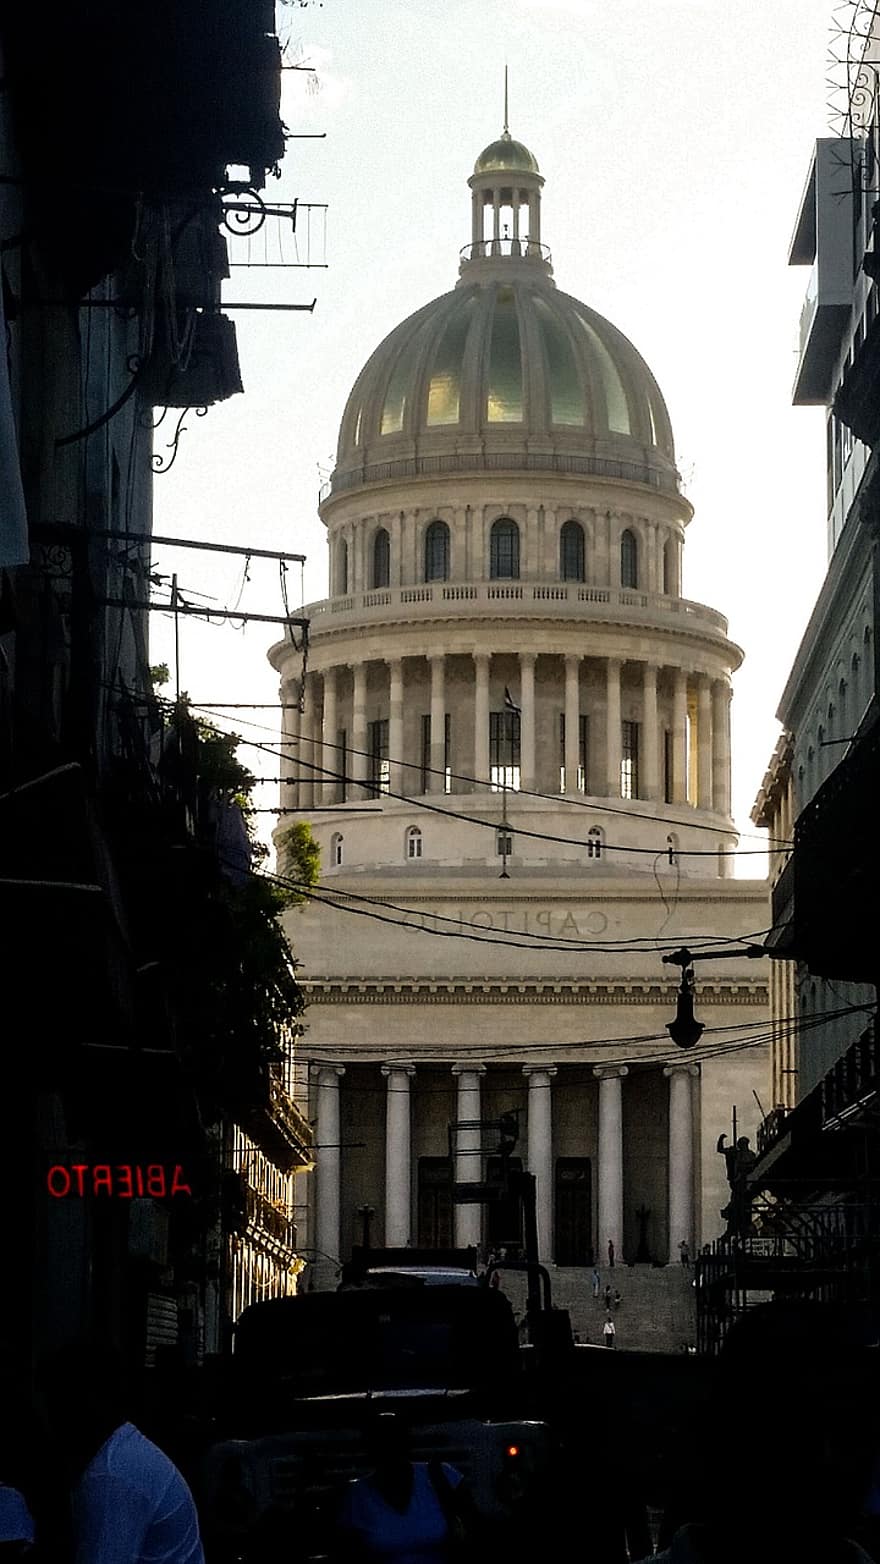 Havana, kongressitalo, kaupunki, Kuuba, el capitolio, National Capitol Building, rakennus, arkkitehtuuri, vanha, historiallinen, katu